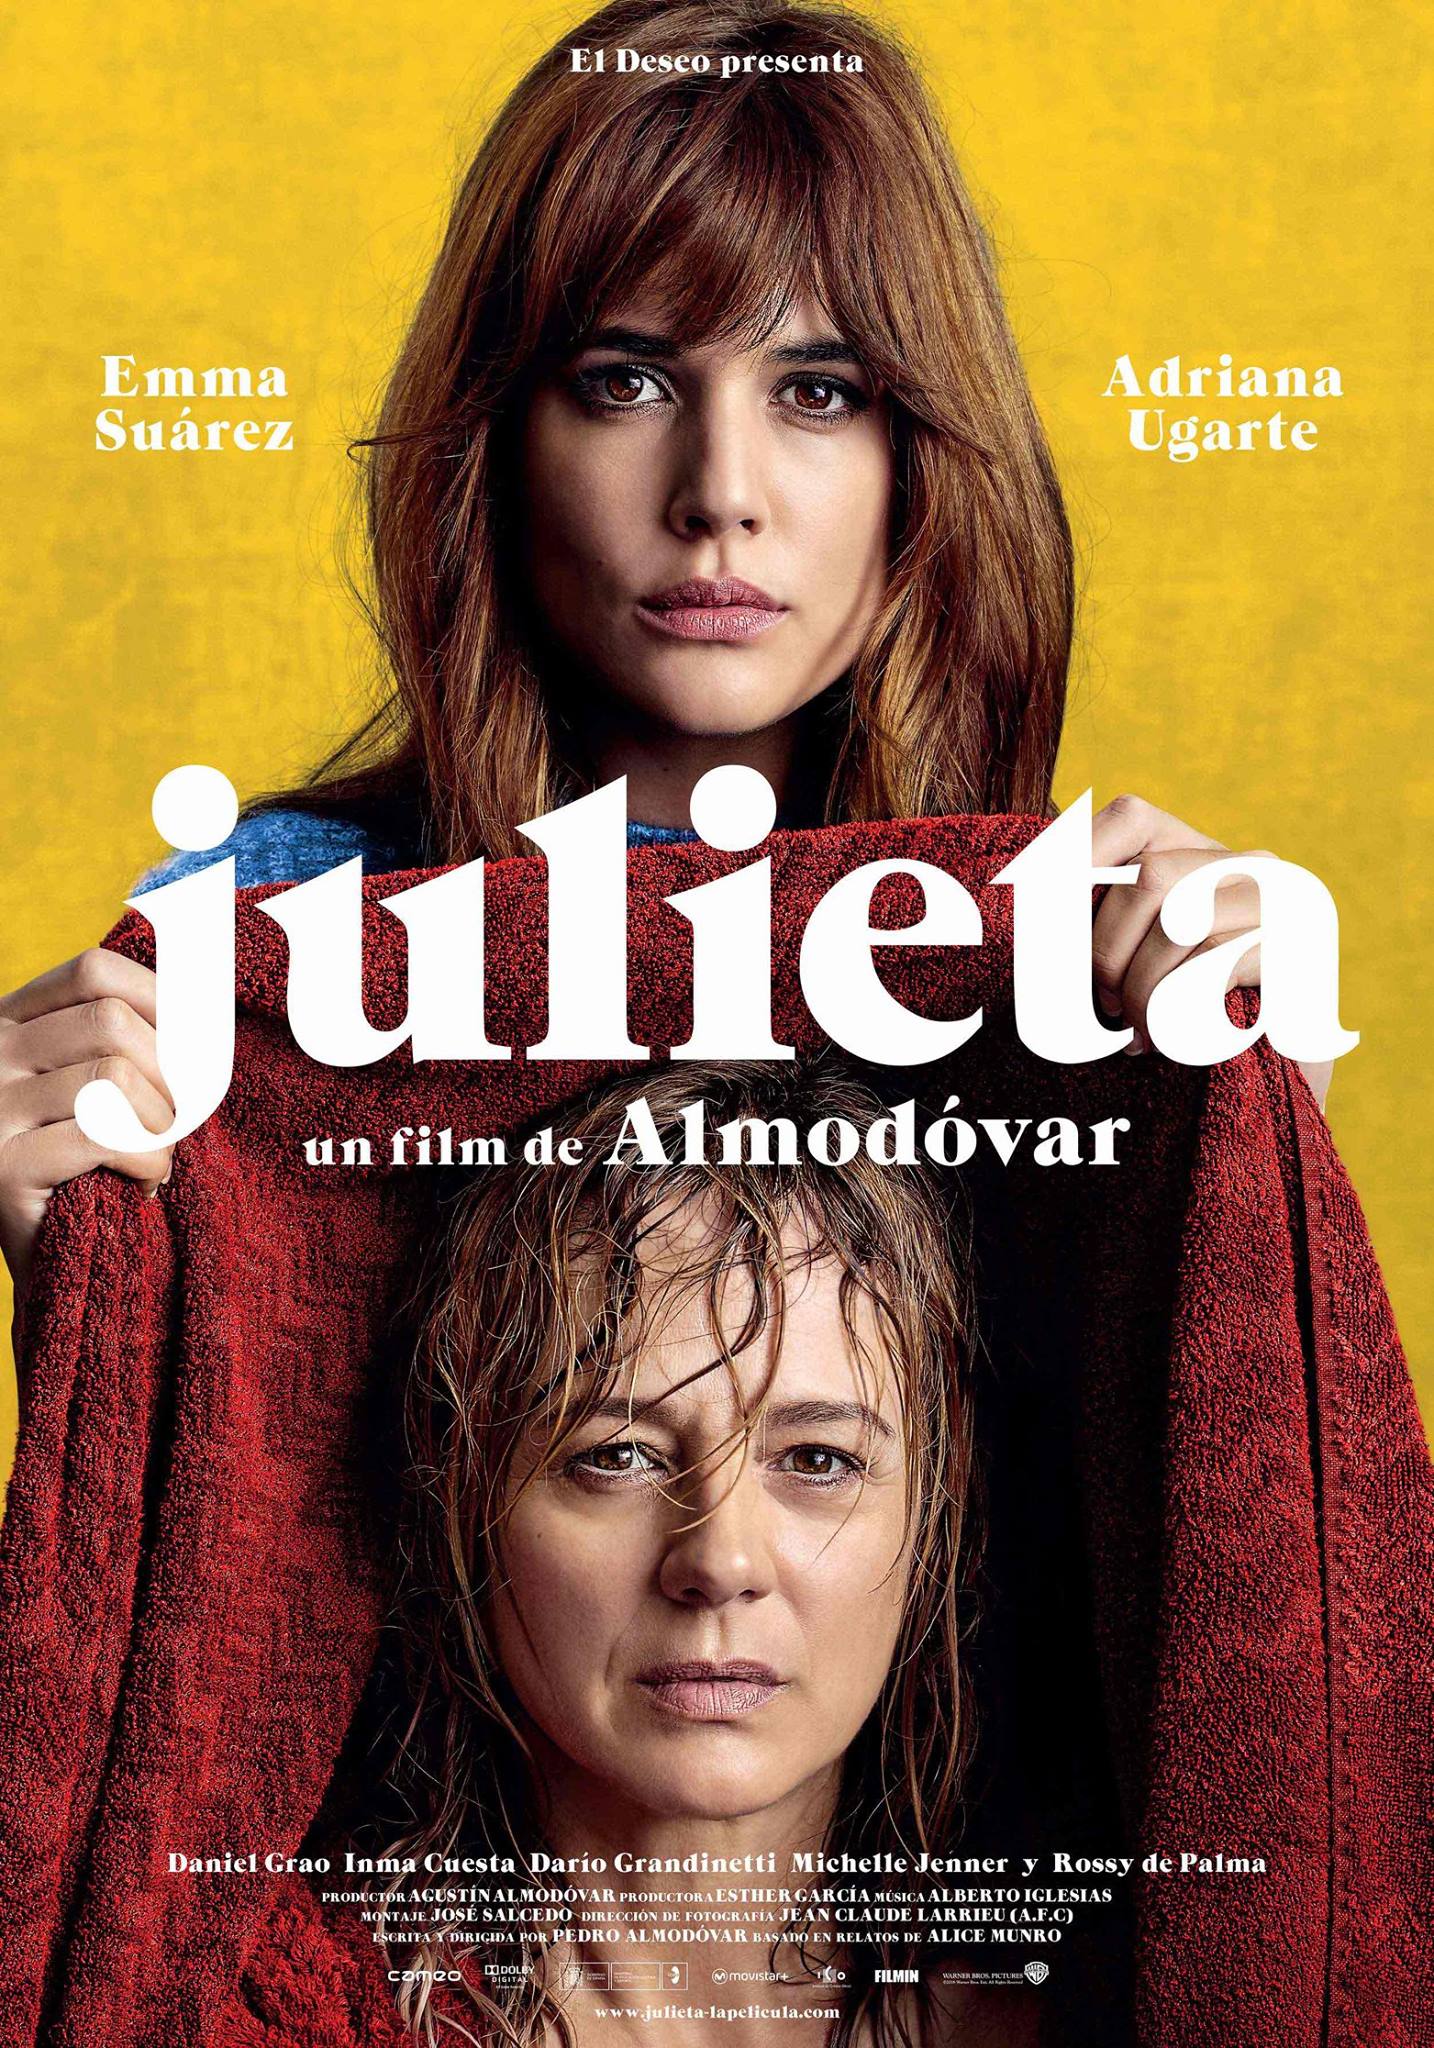 ดูหนังออนไลน์ฟรี Julieta (2016) จูเลียต้า